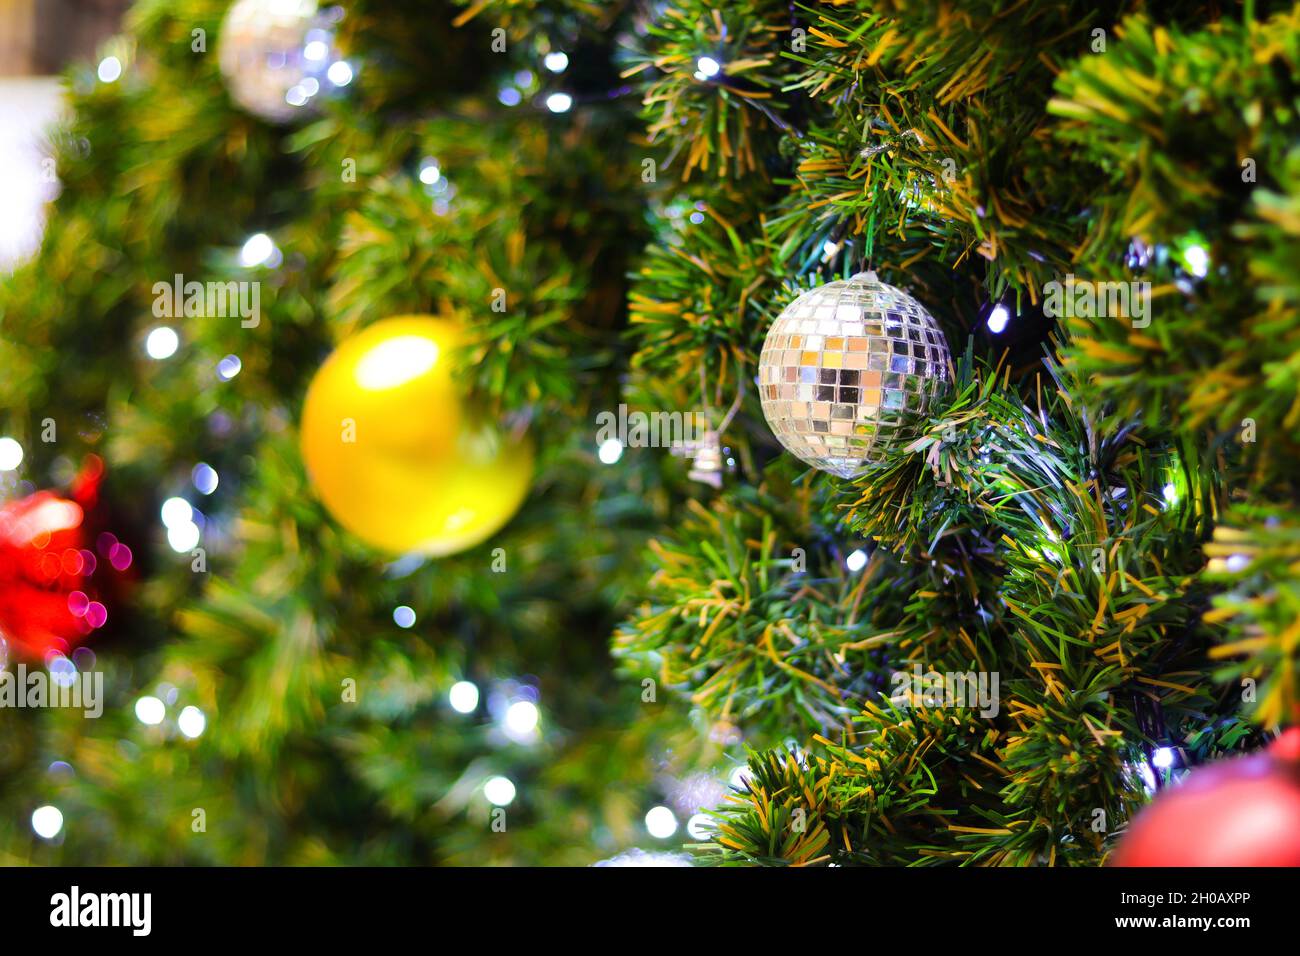 Weihnachtsbaum mit elektrischem Licht und bunten Kugeln verziert. Geeignet als Kulisse für Weihnachten und Neujahr. Stockfoto